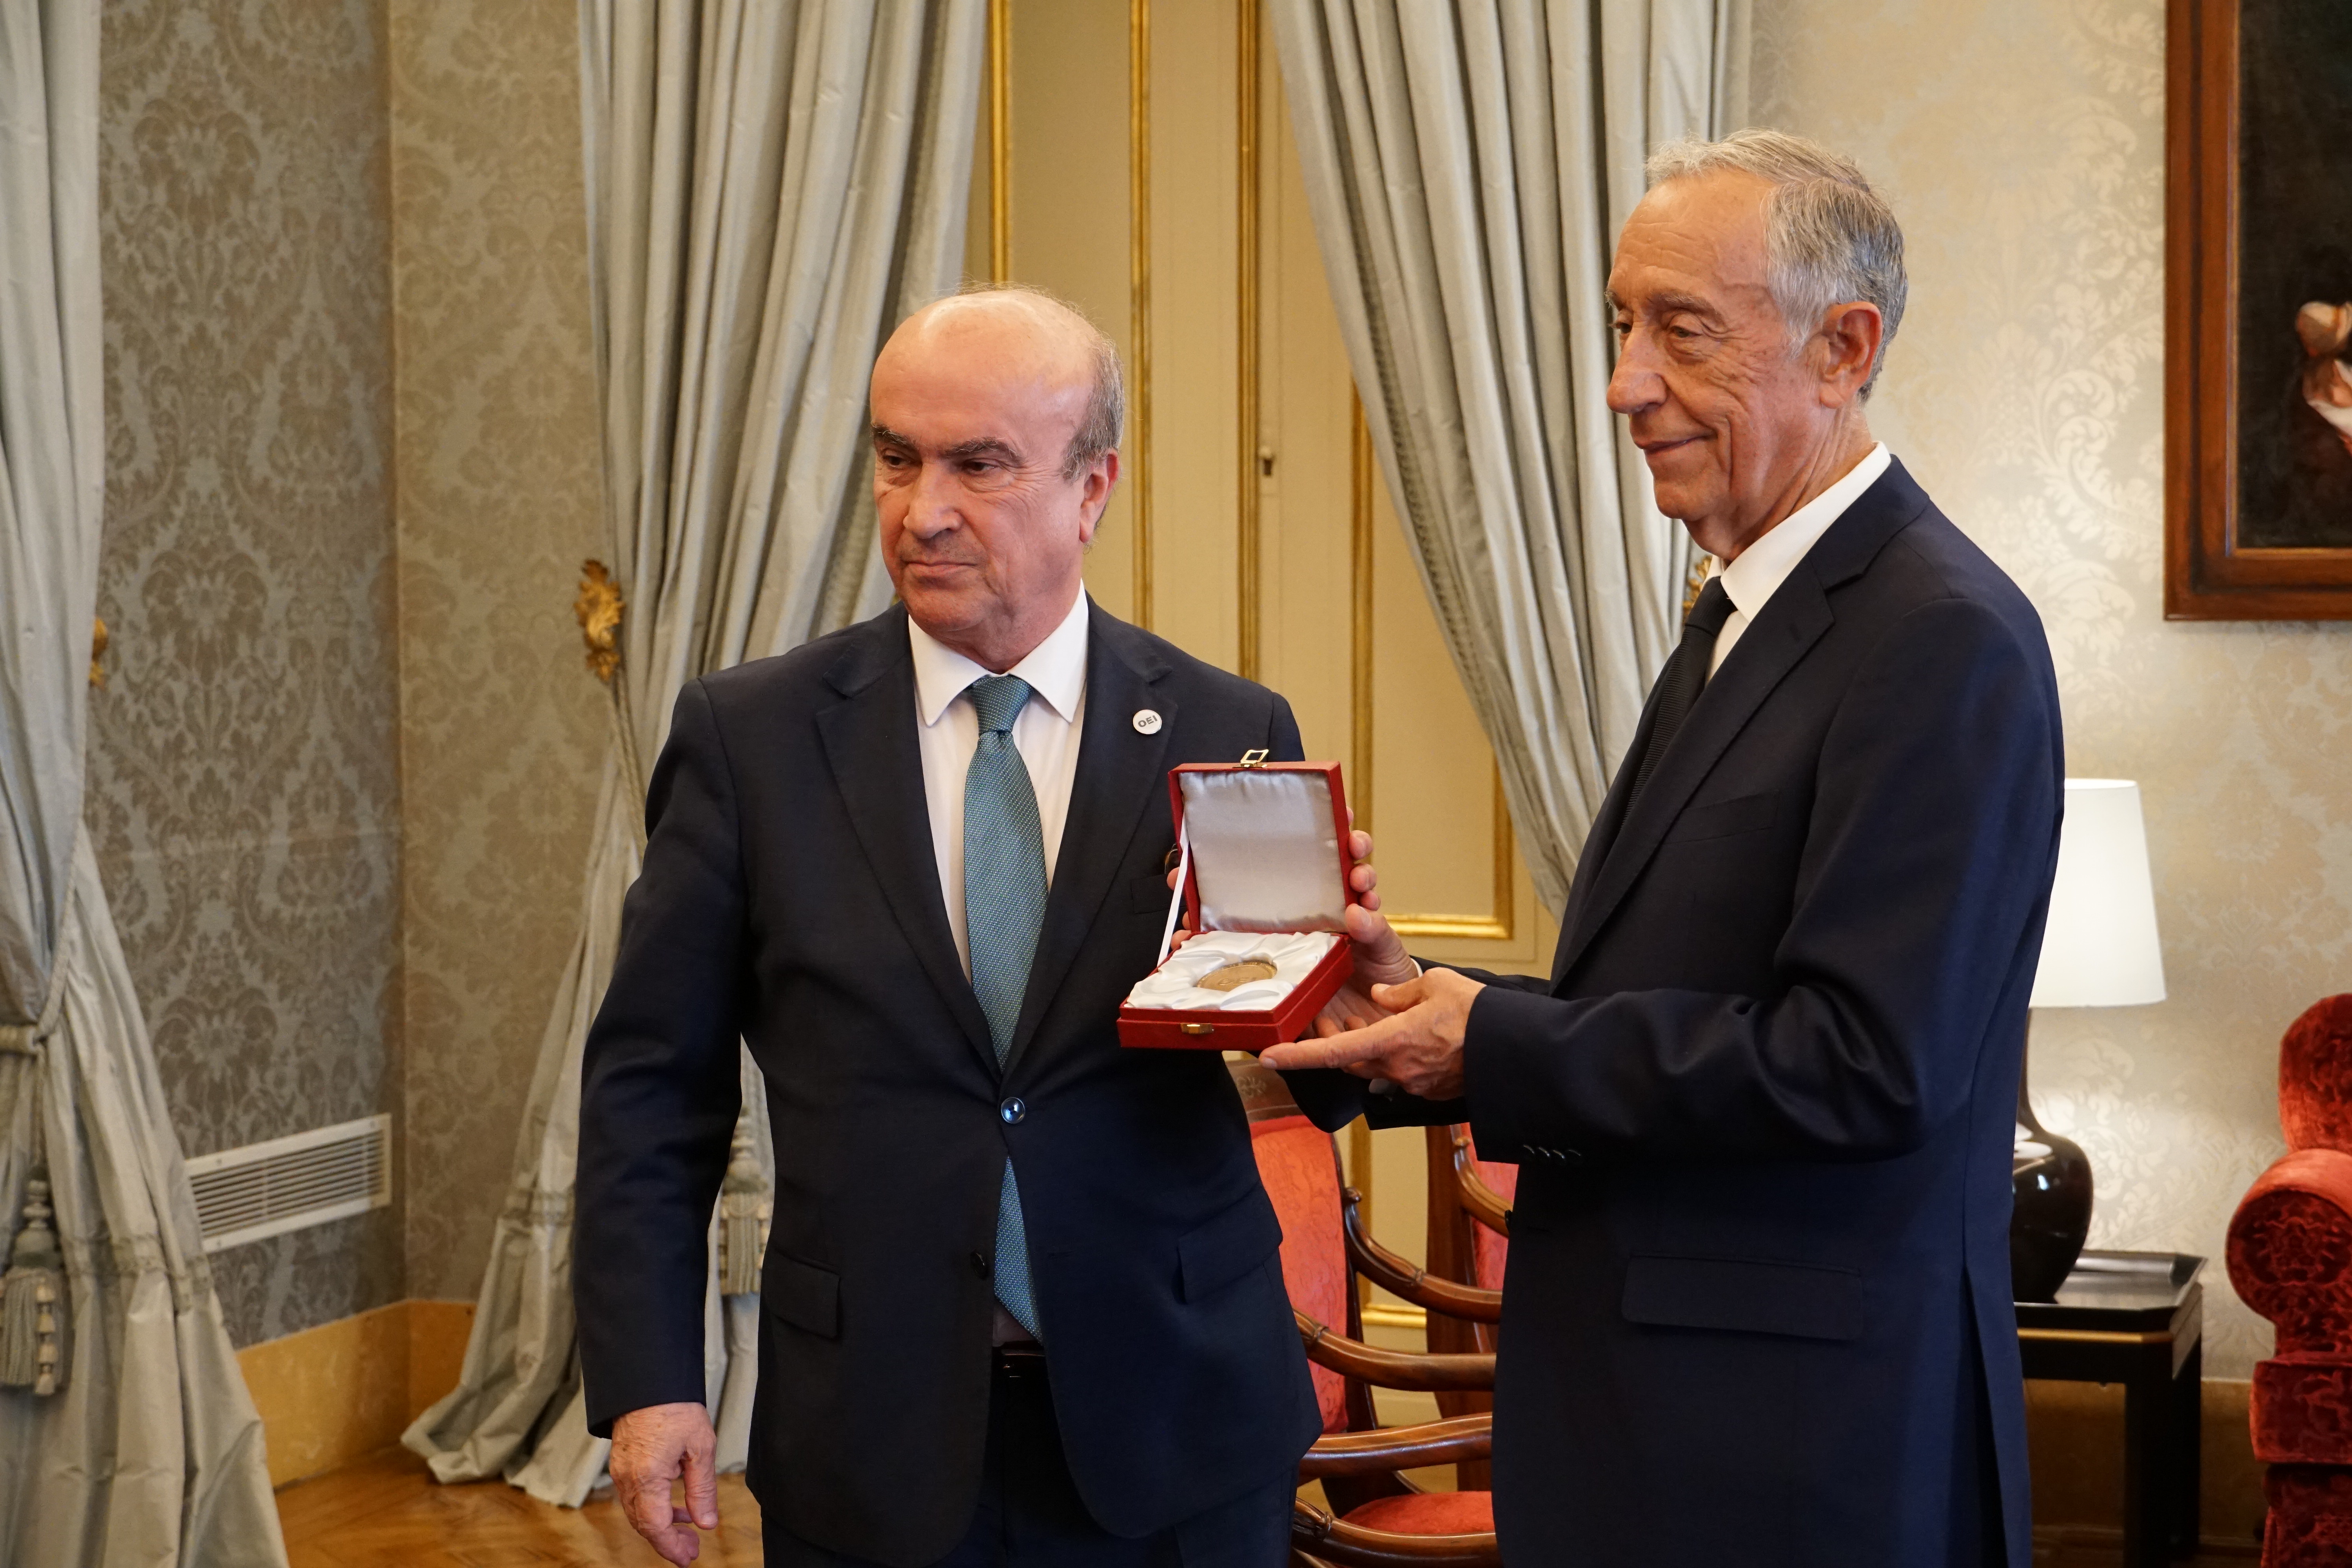 Marcelo Rebelo de Sousa distinguido con la Medalla de Honor de la OEI